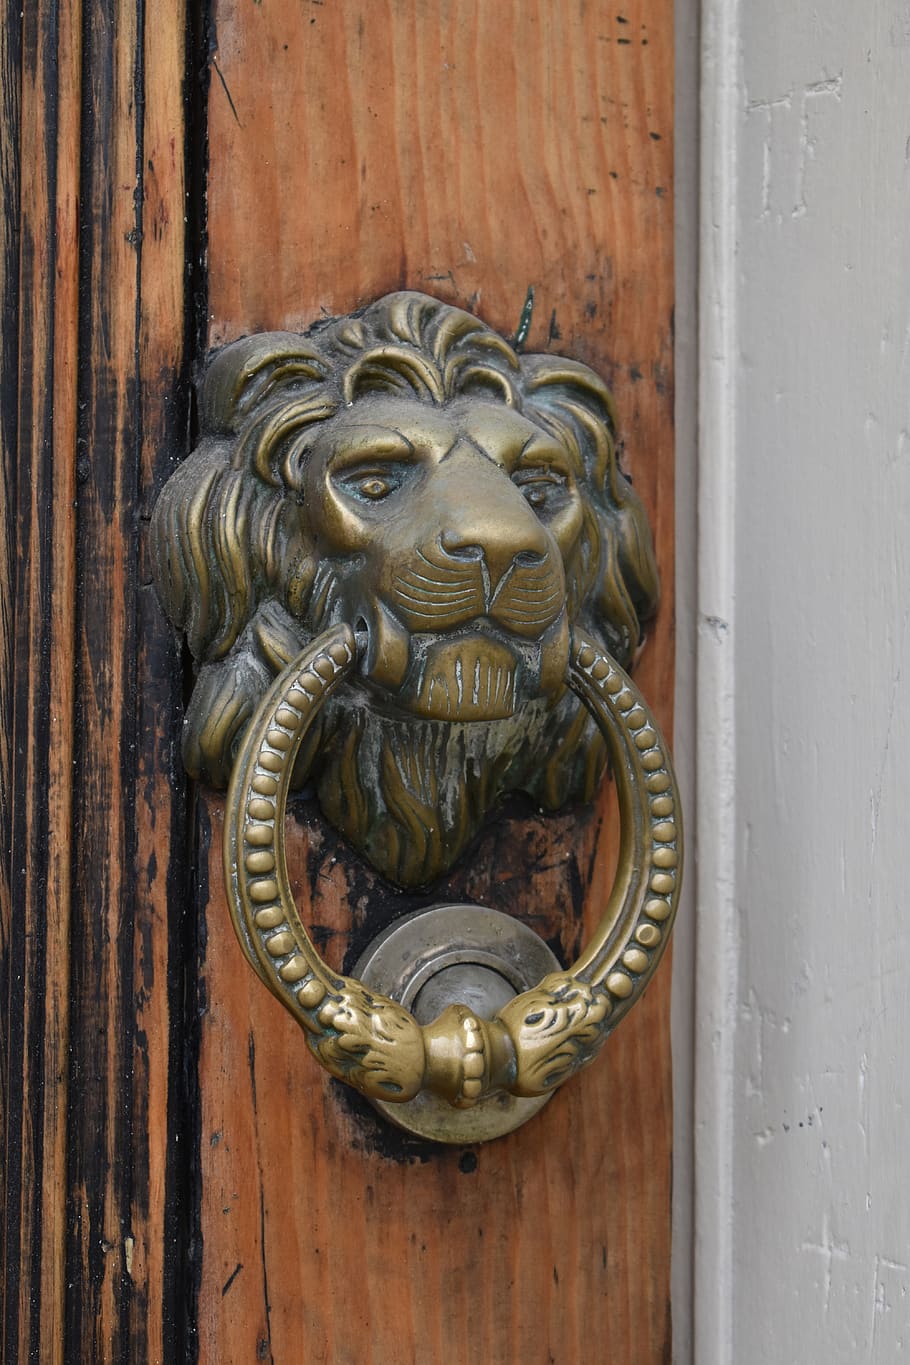 lion, door, doorknocker, old, metal, wood, handle, ornament, HD wallpaper